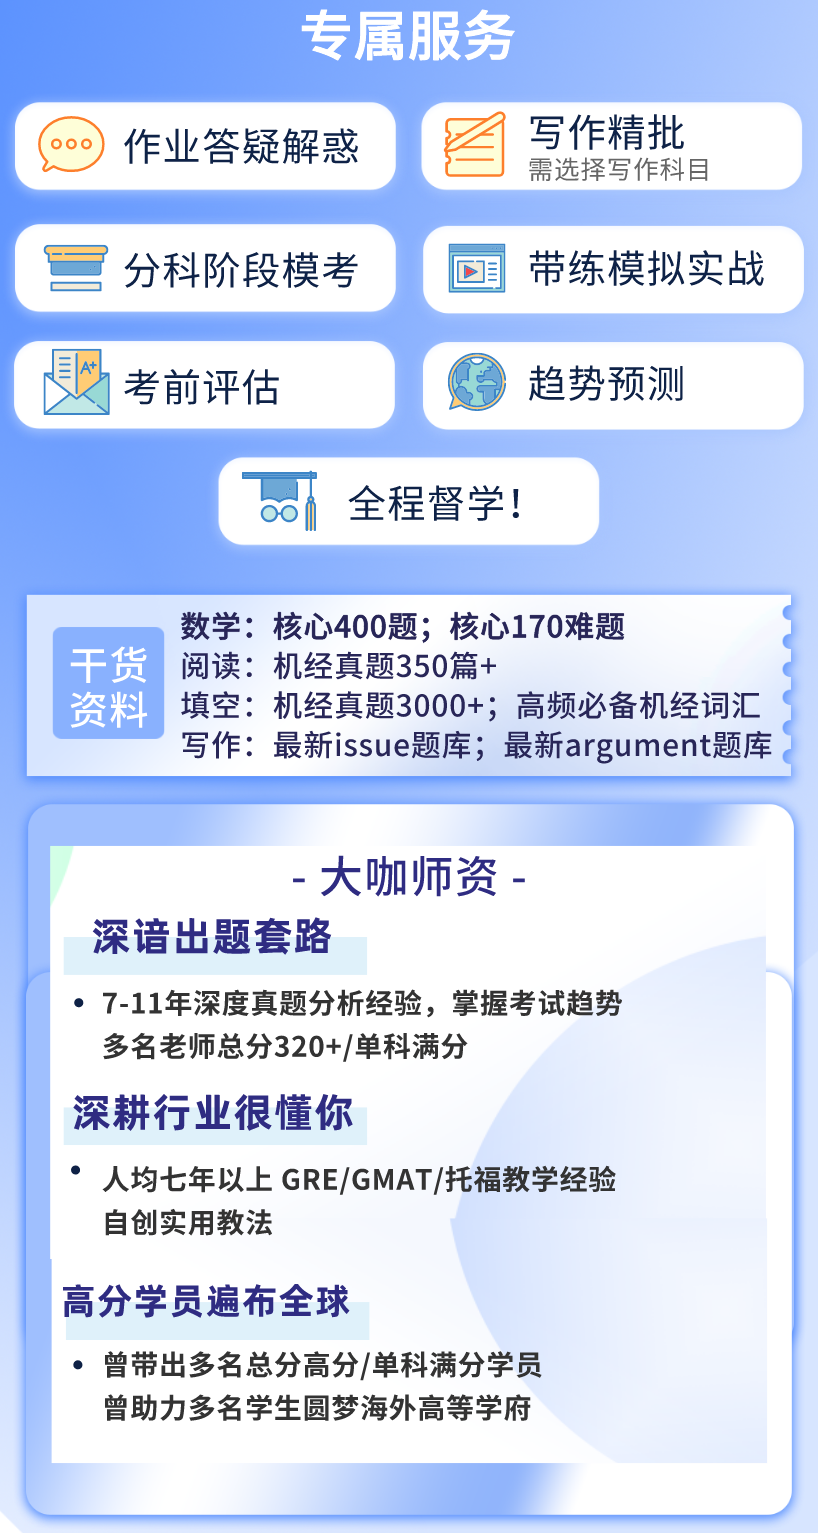 https://simg01.gaodunwangxiao.com/uploadfiles/product-center/202210/25/c7783_20221025132844.png